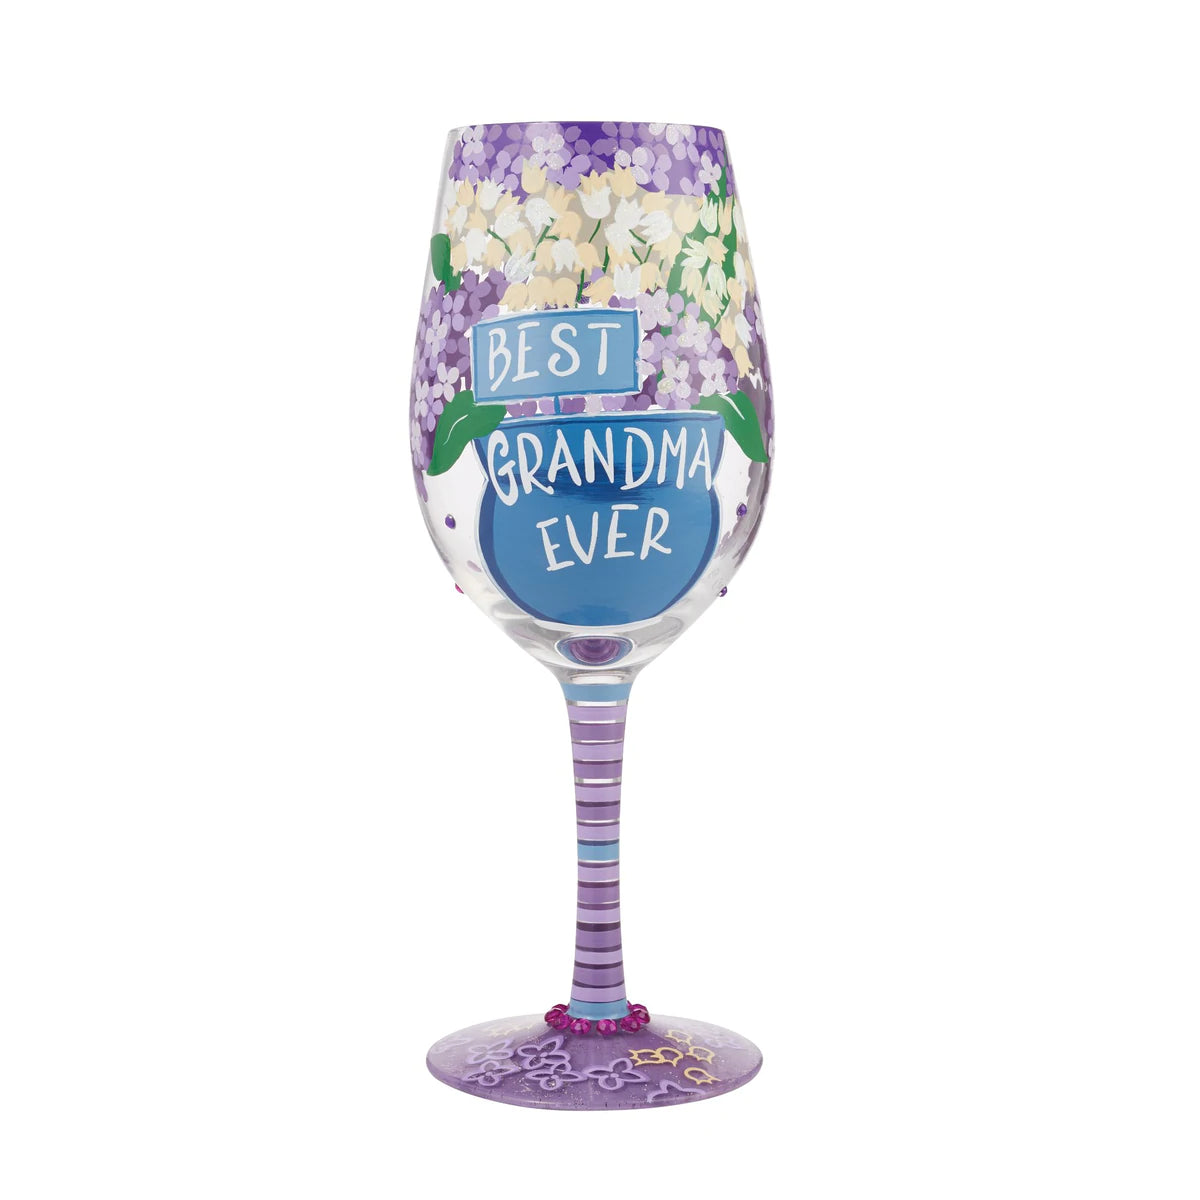 Lolita “Best Grandma Ever” Wine Glass